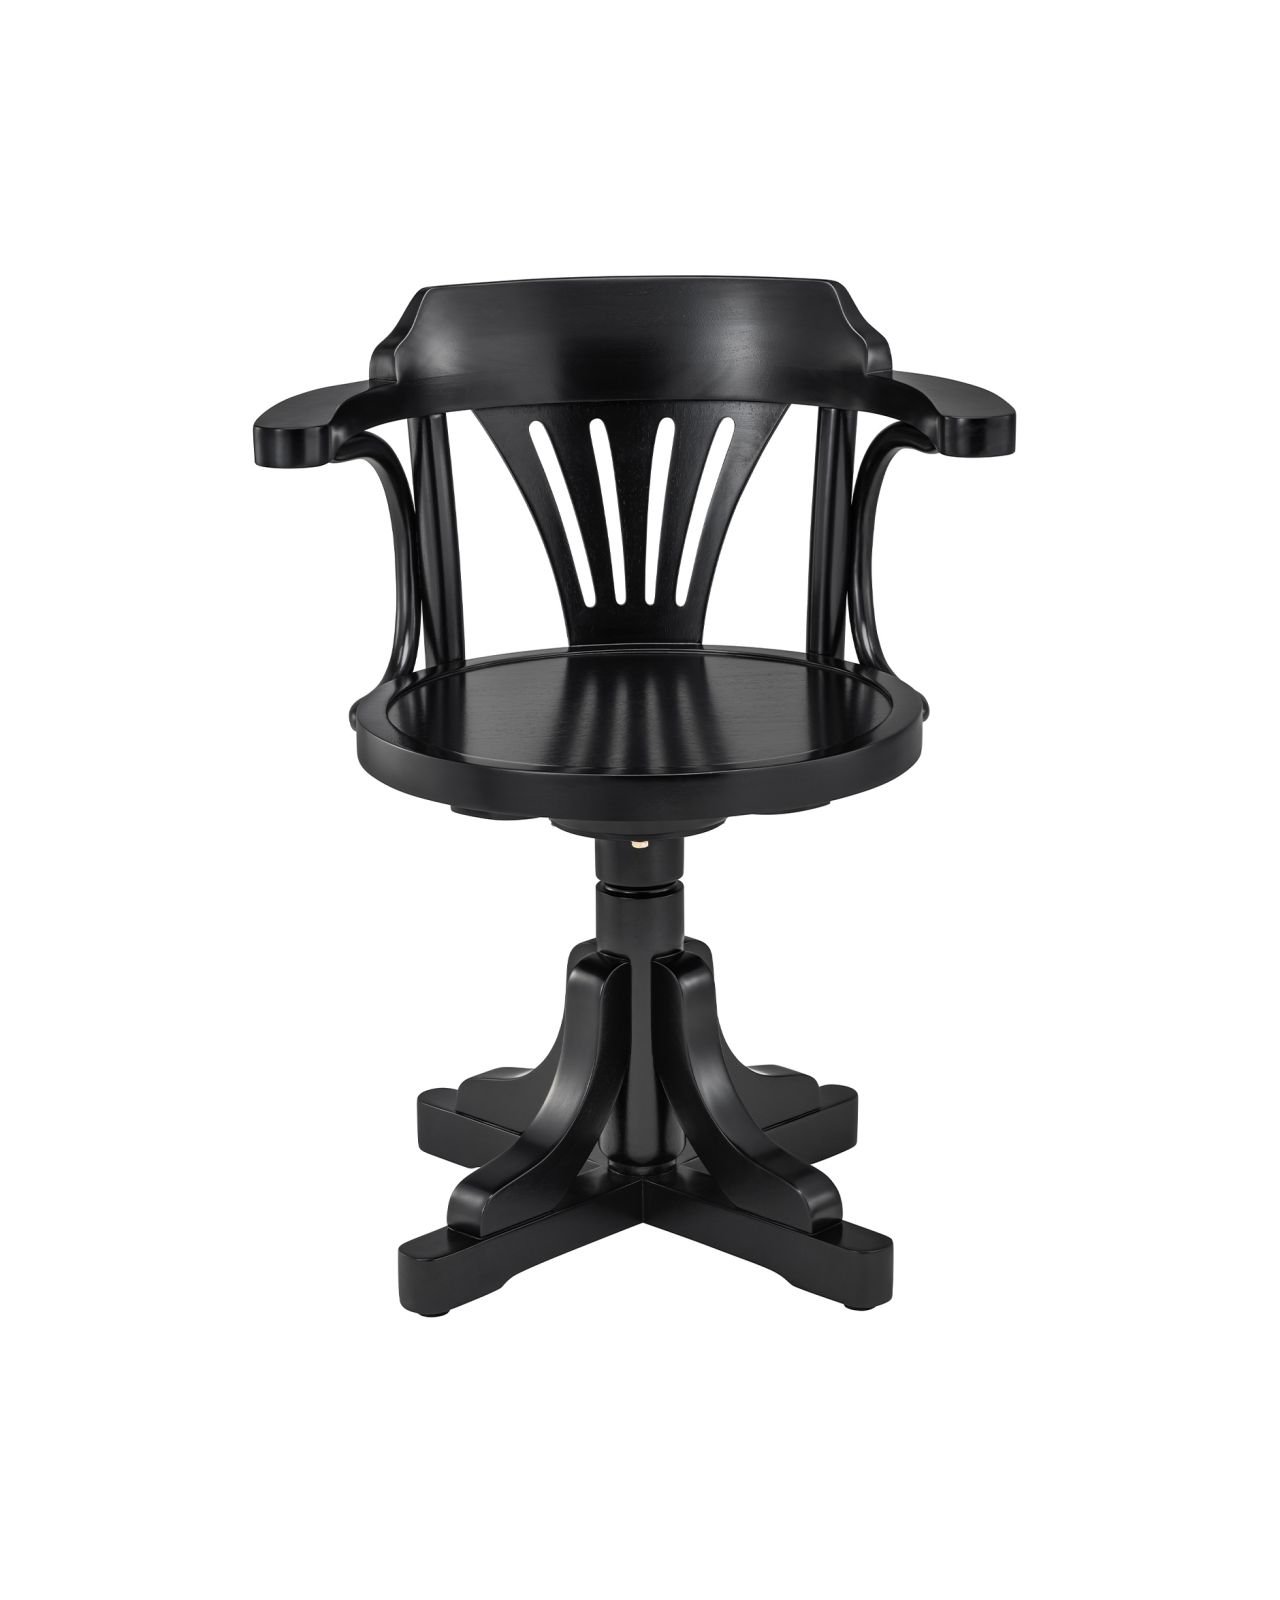 Purser's chair black